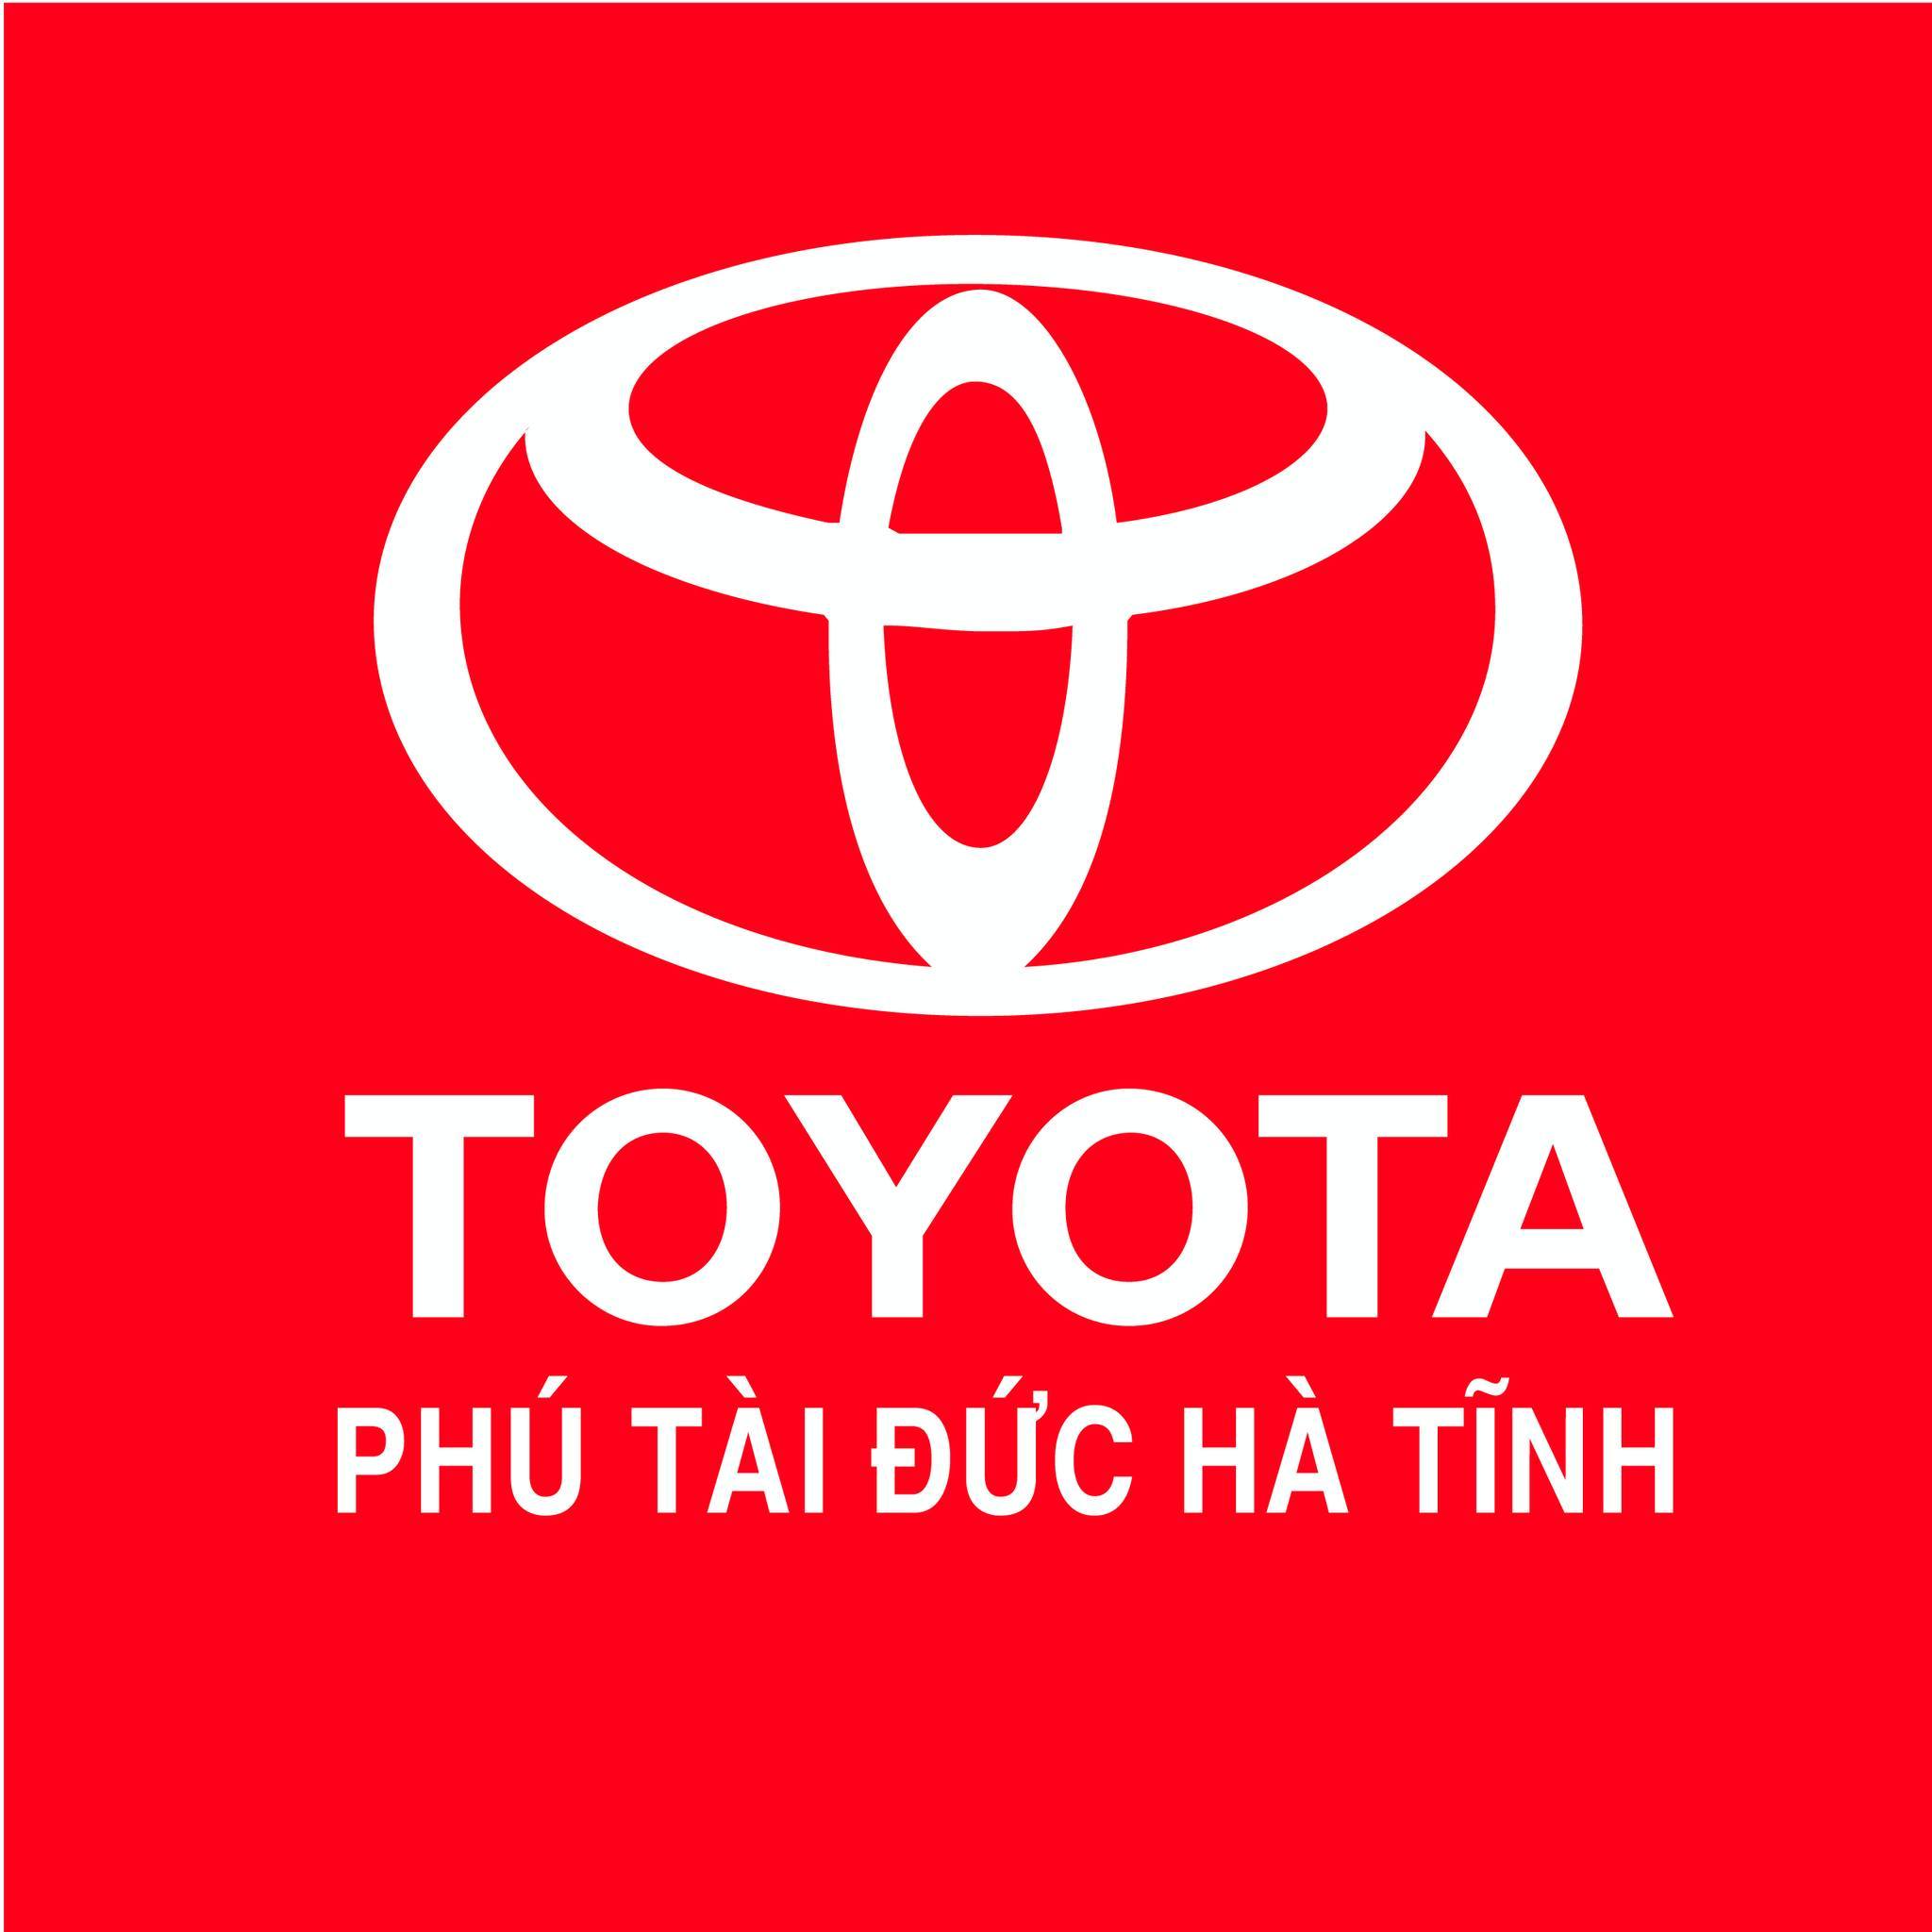 TOYOTA PHÚ TÀI ĐỨC HÀ TĨNH: Tư vấn 0941716692 - Cập nhật bảng giá xe Toyota mới nhất tại Việt Nam & giá xe ô tô Toyota Vios, Corolla Altis, Camry, Yaris, Innova, Wigo, Fortuner Land Cruiser, Hilux, Hiace